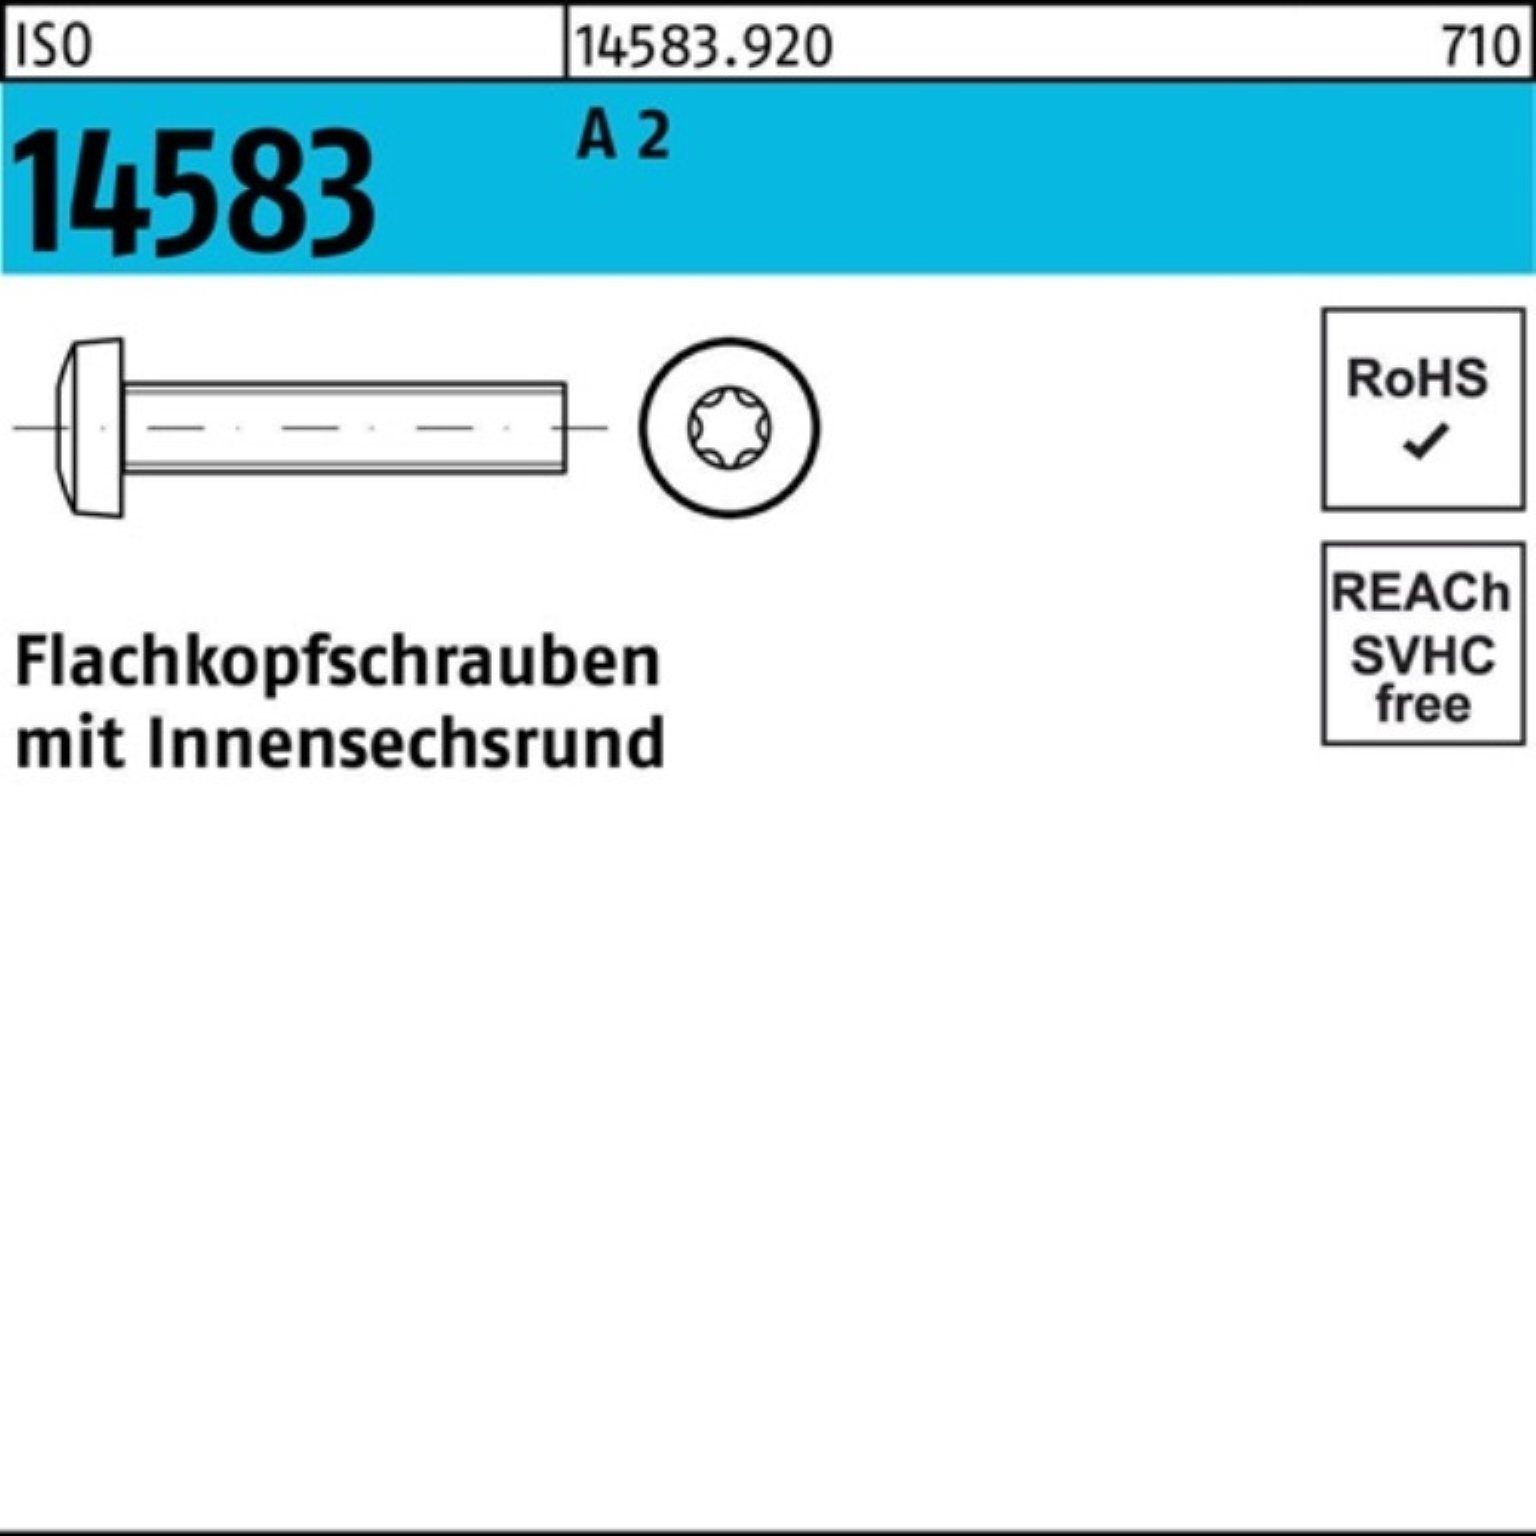 Reyher Schraube 2 Pack 1000 ISO Stück ISO A 1000er Flachkopfschraube M3x ISR 4 14583